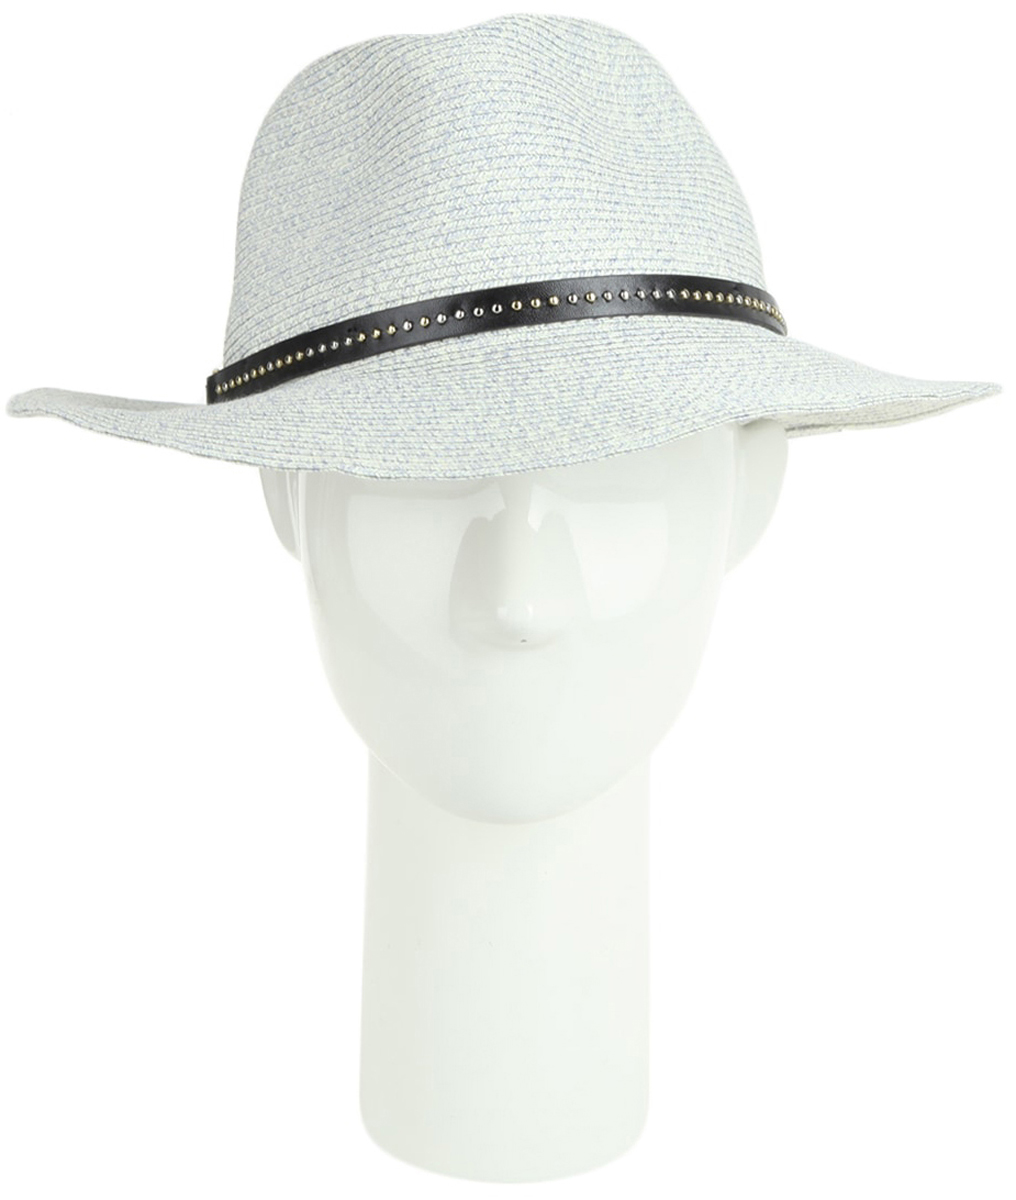 Шляпа женская Moltini, цвет: серый. 170617-240K. Размер 57/58